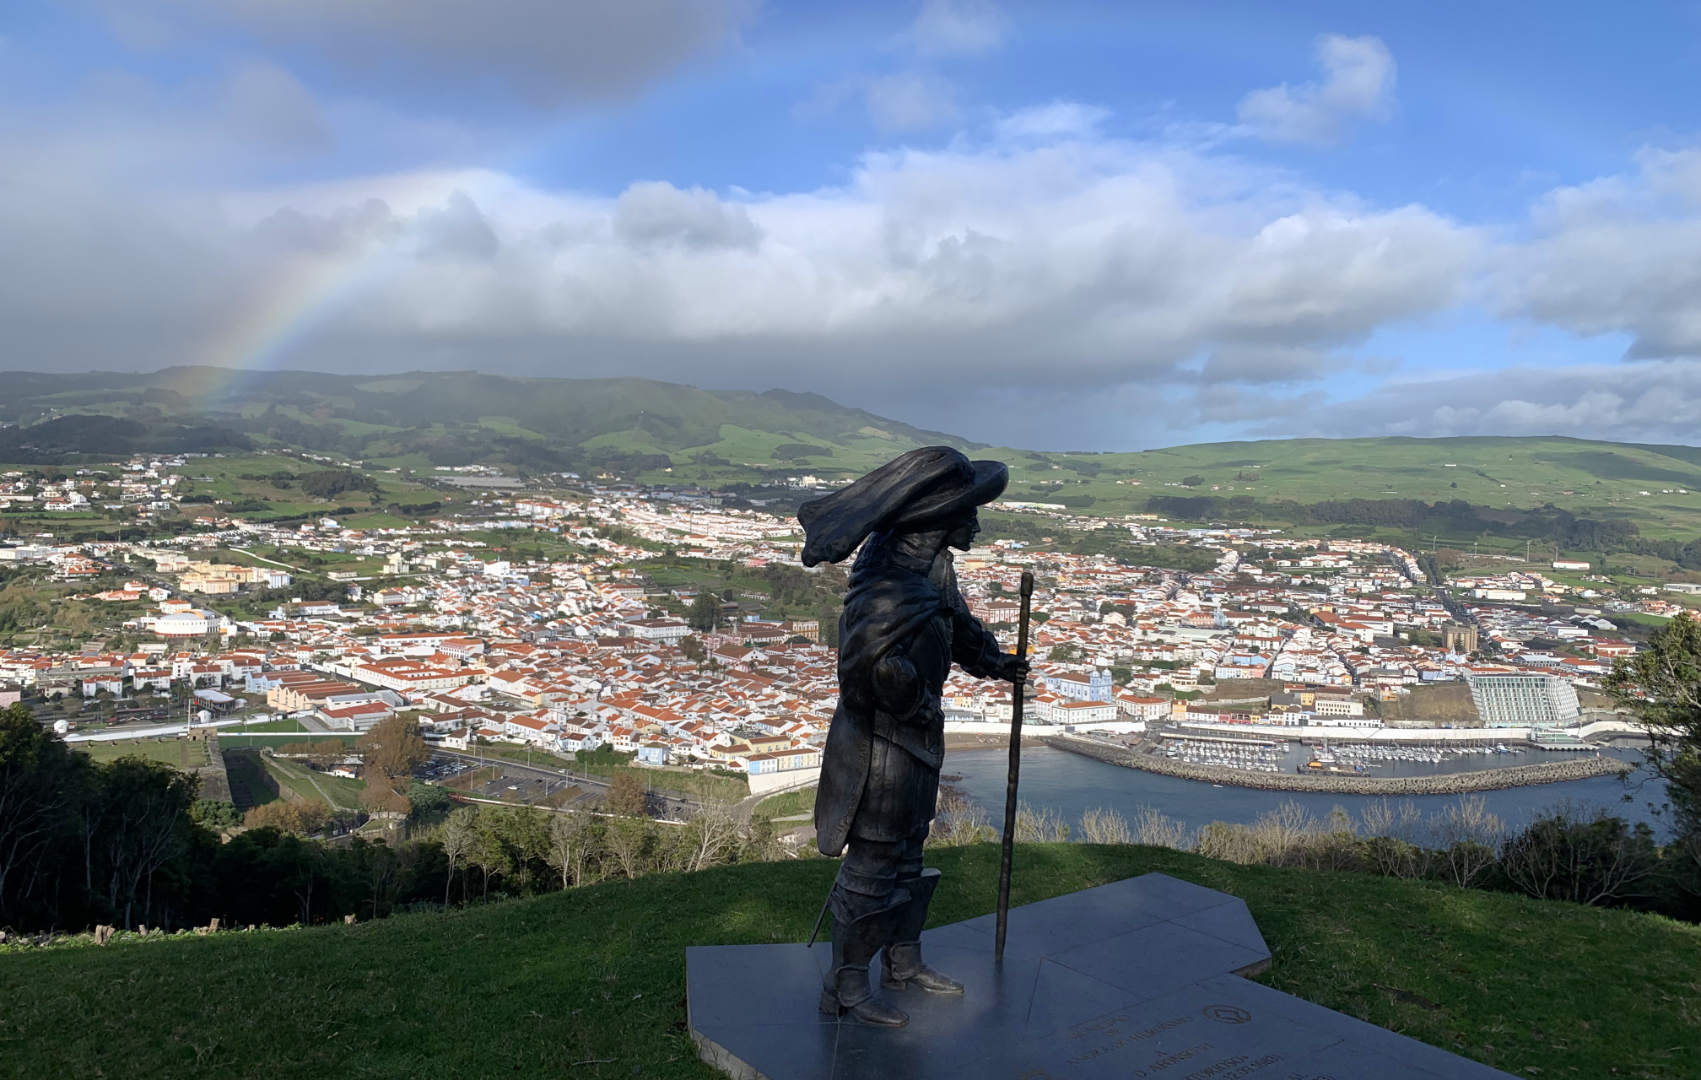 Vasco de Gaia looking over Angra do Heroísmo.